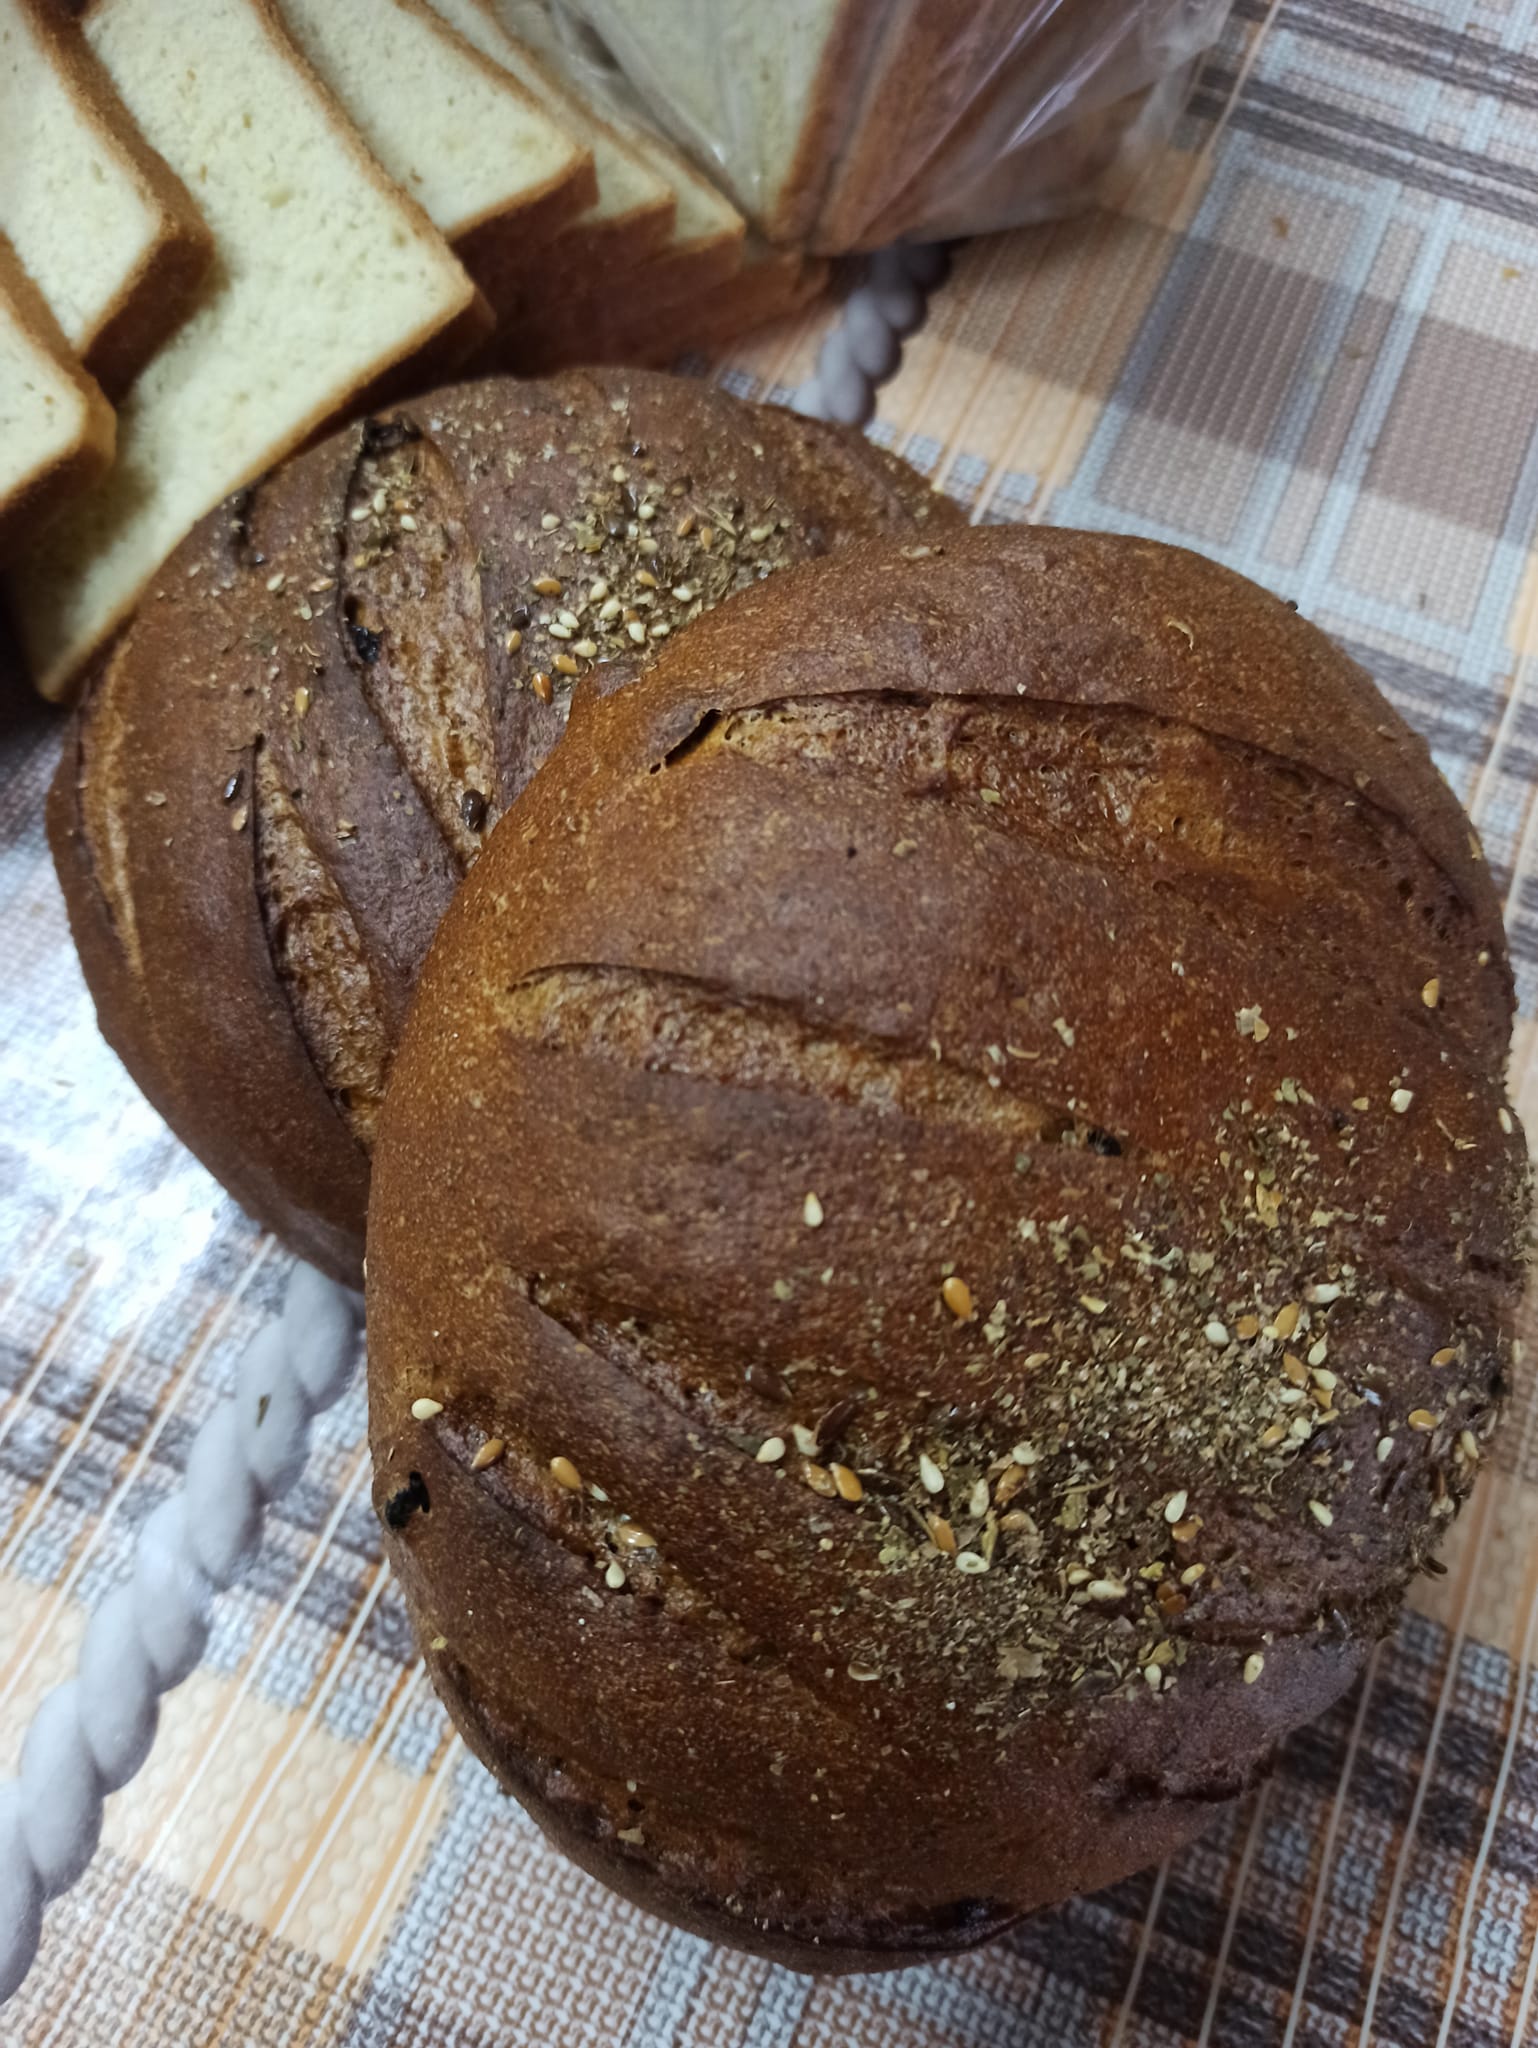 Хліб «Карельський» - заварний із родзинками та тестовий білий. Фото: ФБ/Приватна пекарня 